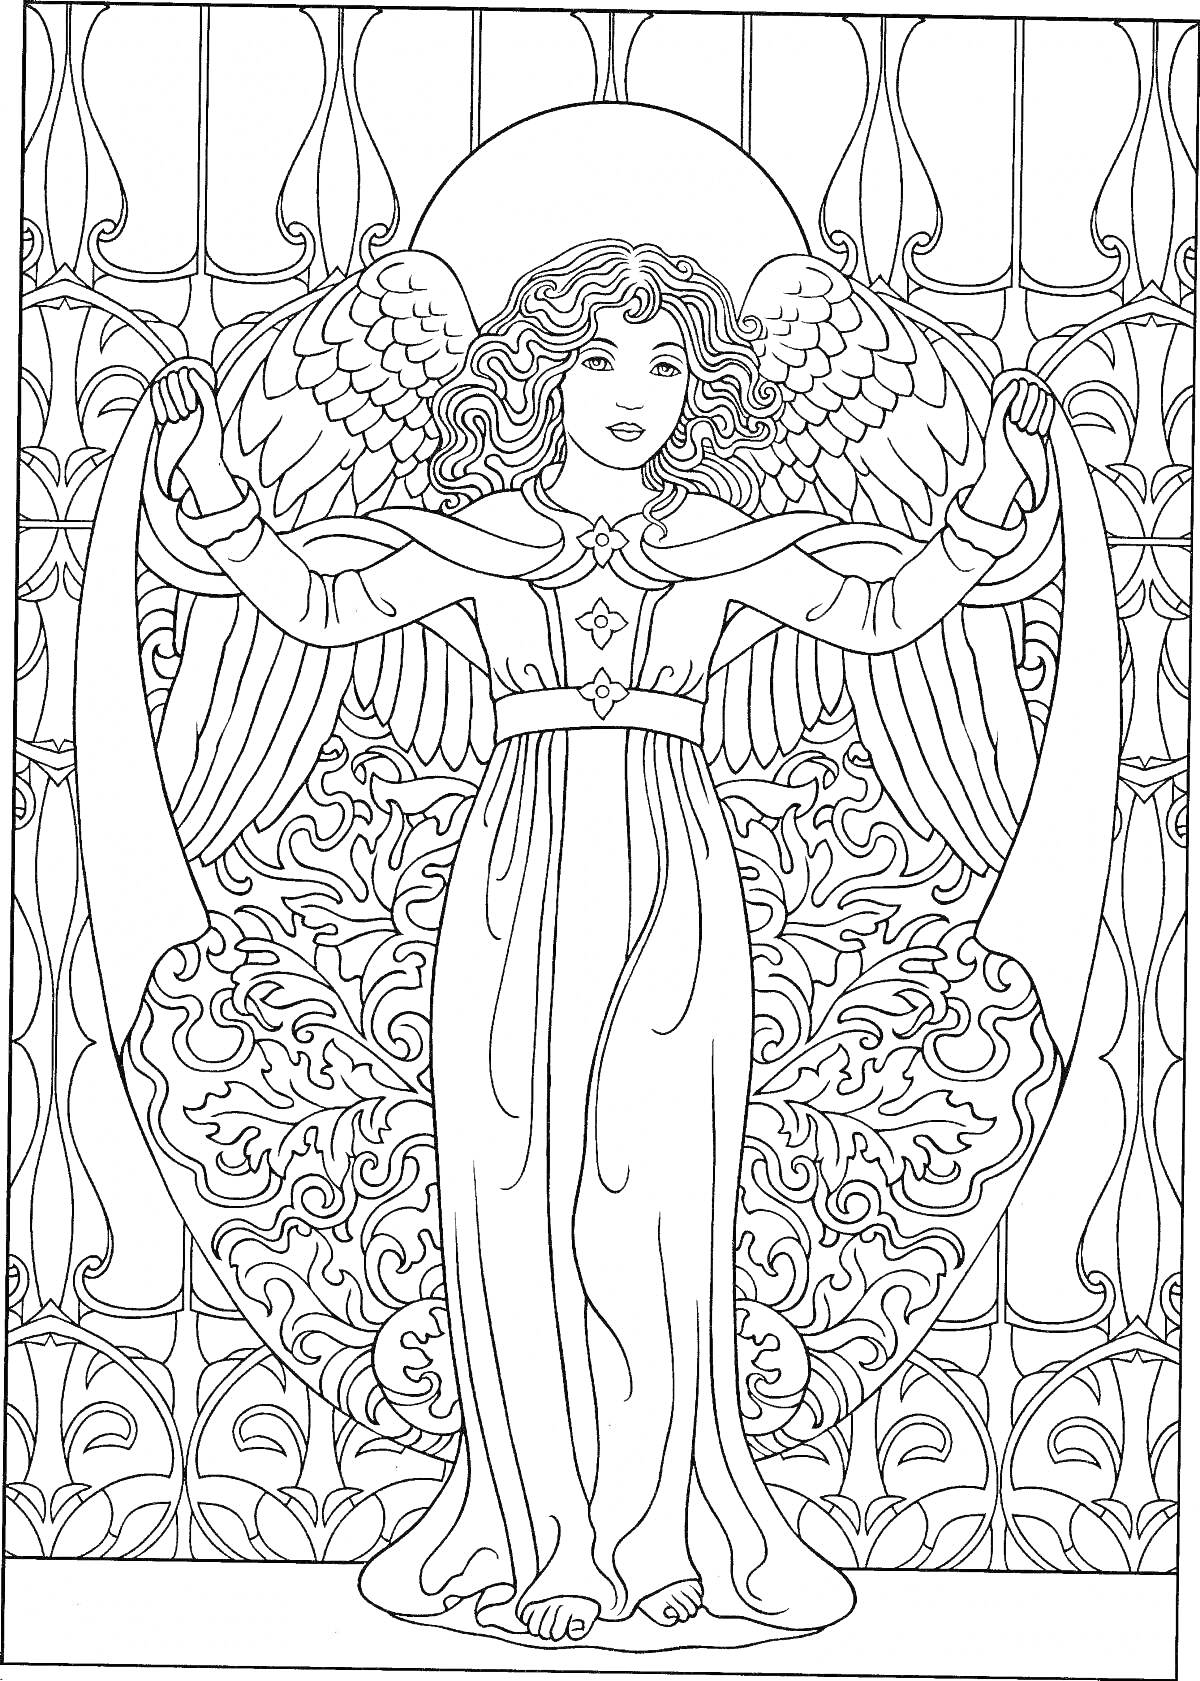 Раскраска Ангел с расправленными крыльями, стоящий среди декоративных узоров у окна